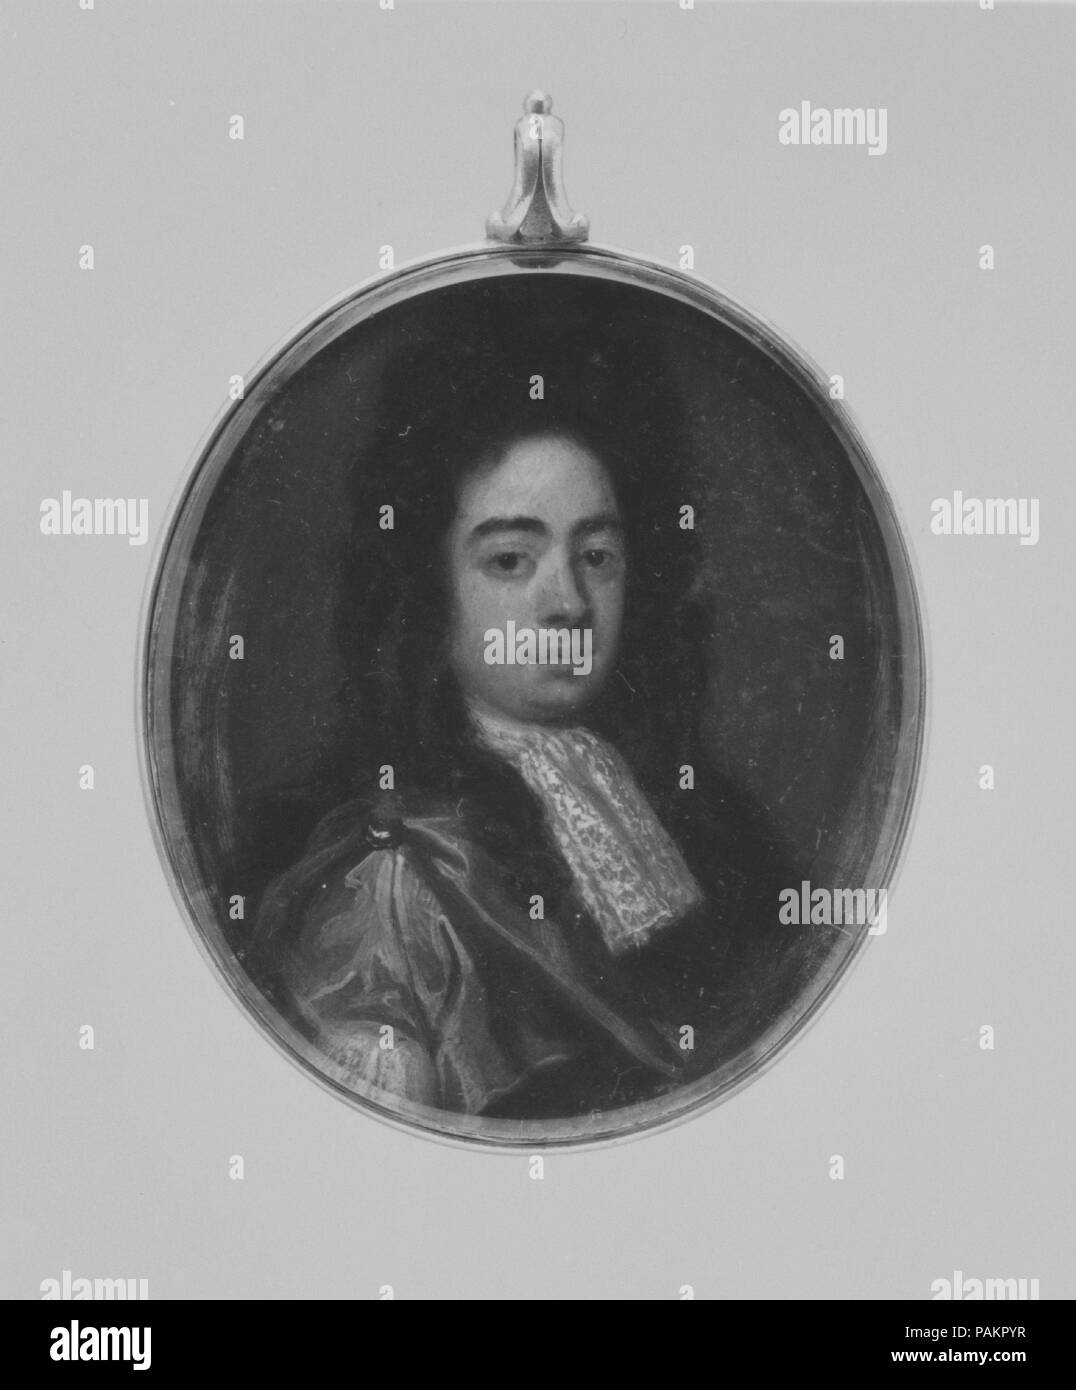 Ritratto di un uomo. Artista: pittore inglese (ca. 1690). Dimensioni: ovale, 2 3/8 x 2 in. (60 x 50 mm). Museo: Metropolitan Museum of Art di New York, Stati Uniti d'America. Foto Stock